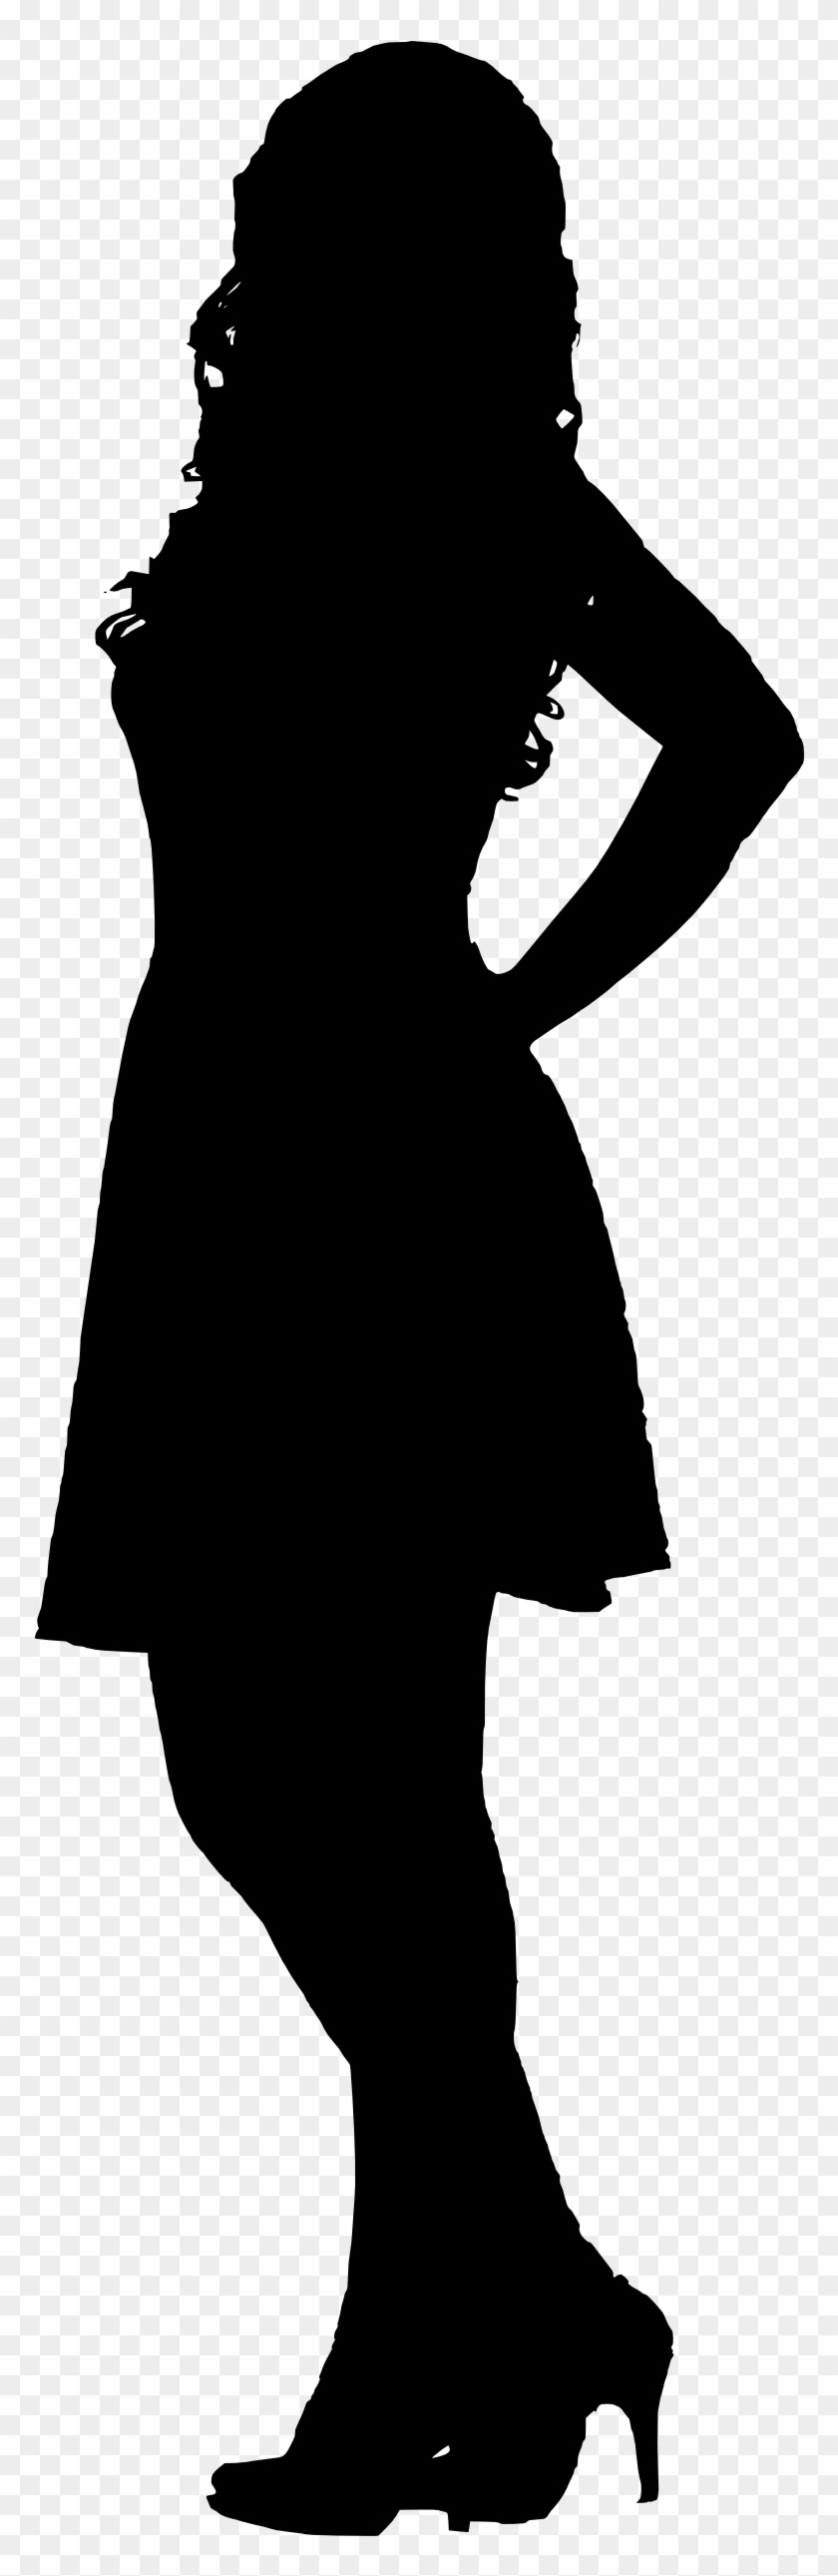 Silhouette Woman In Dress - Little Black Dress #1152242